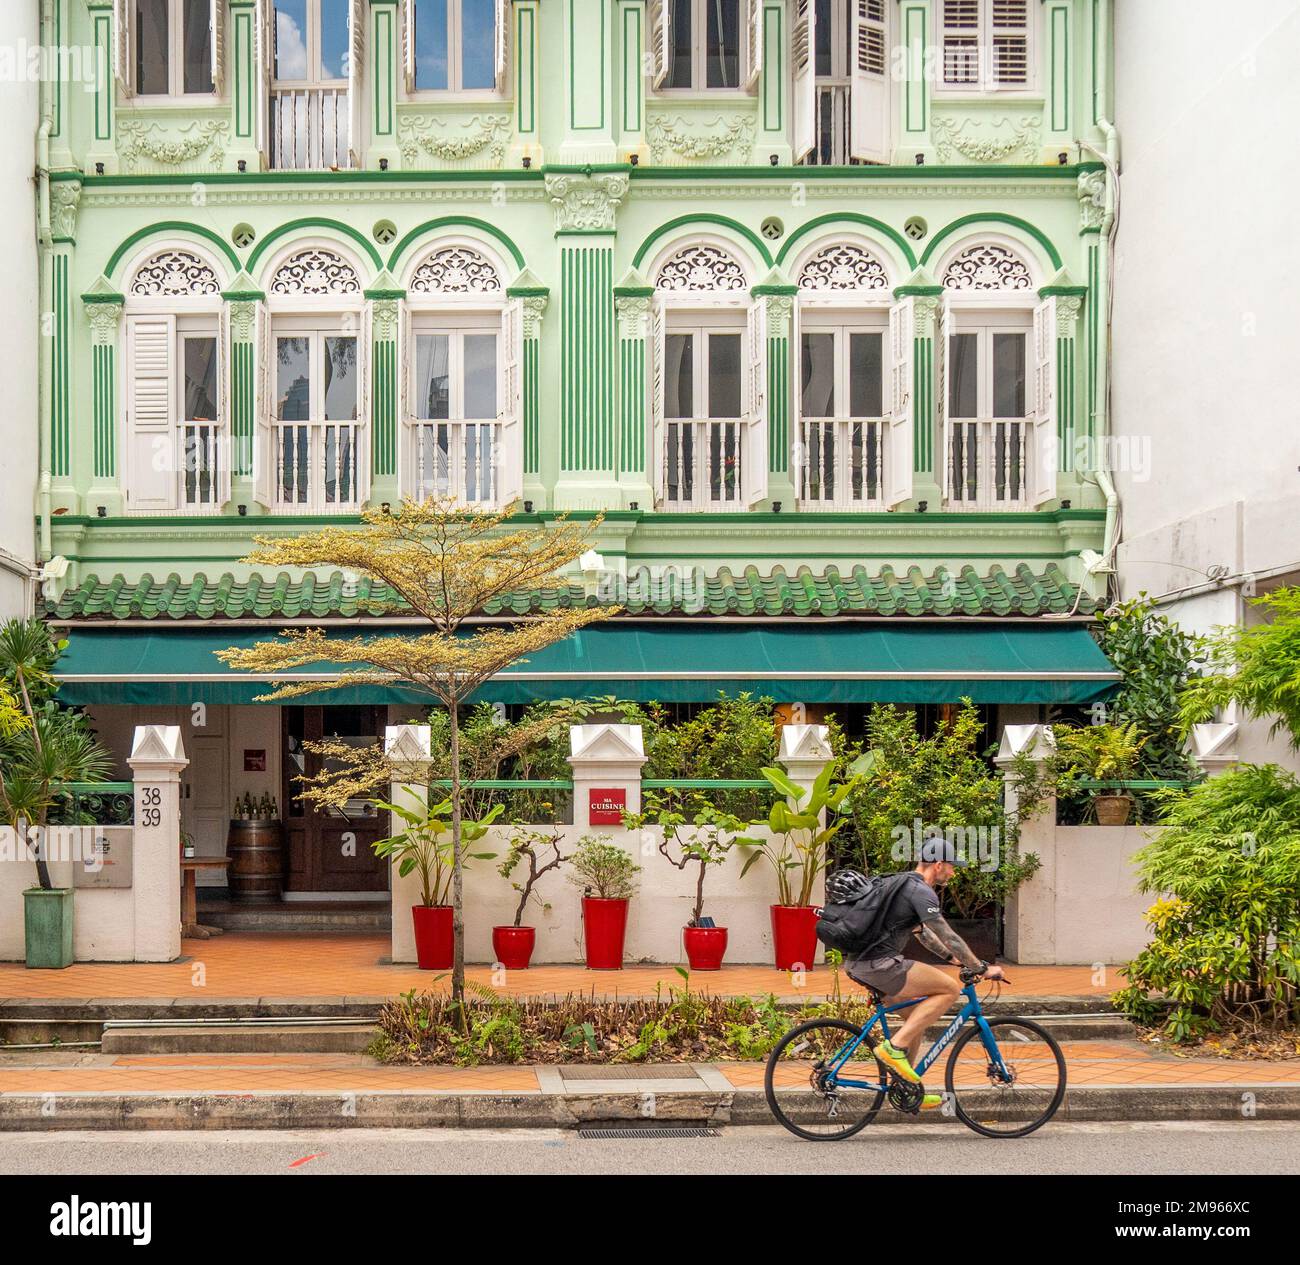 Fahrrad-Pass für Radfahrer, terrassenförmige Geschäfte, die in ein Restaurant auf der Keong Saik Rd Chinatown Singapur umgewandelt wurden Stockfoto